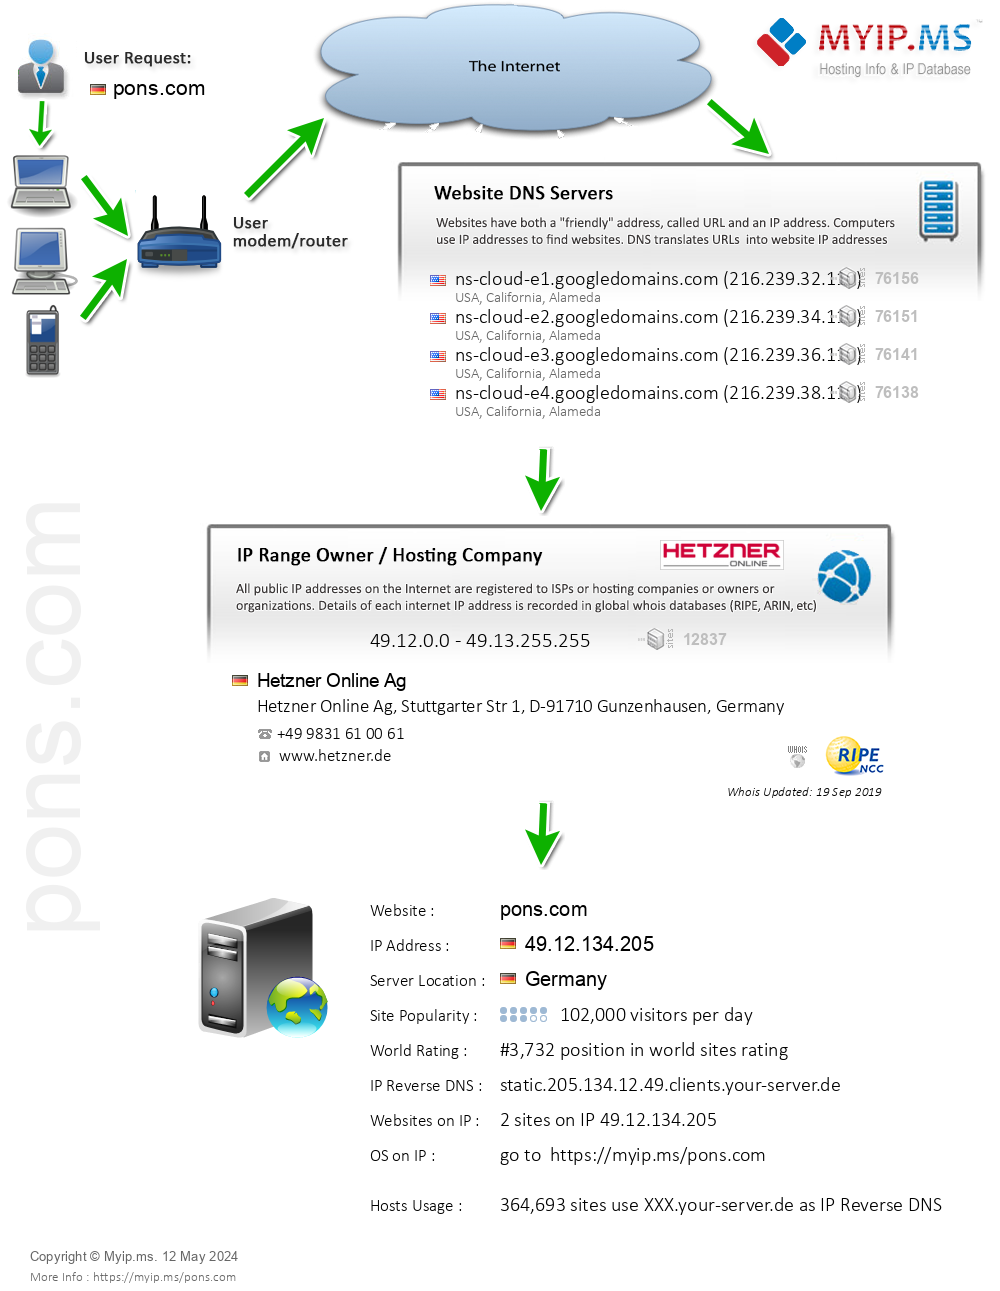 Pons.com - Website Hosting Visual IP Diagram